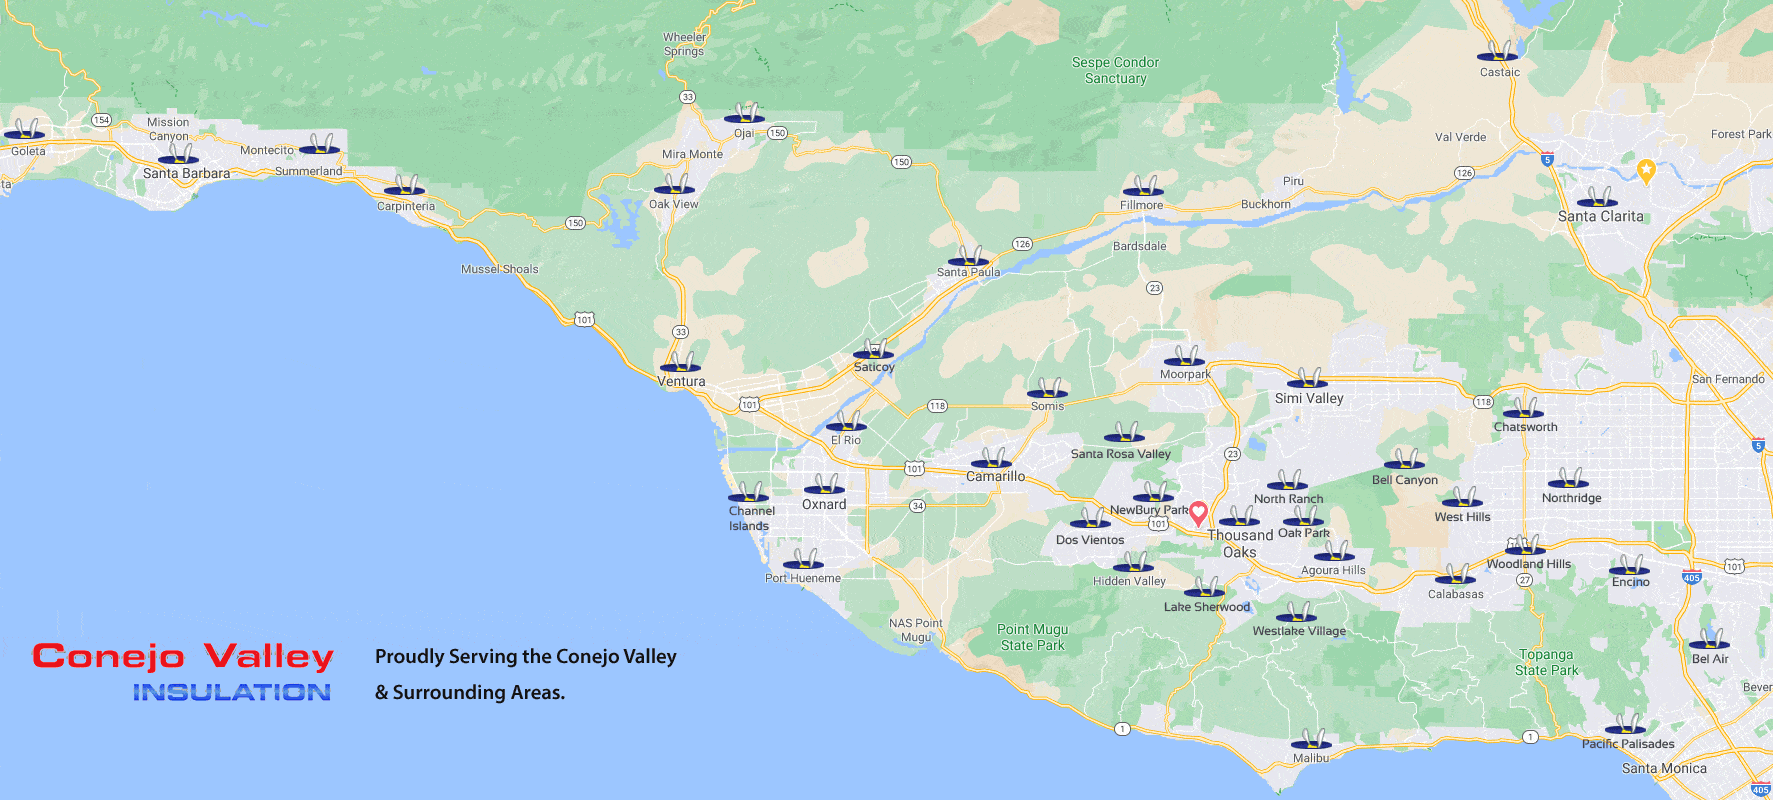 Conejo Valley Insulation Service Areas